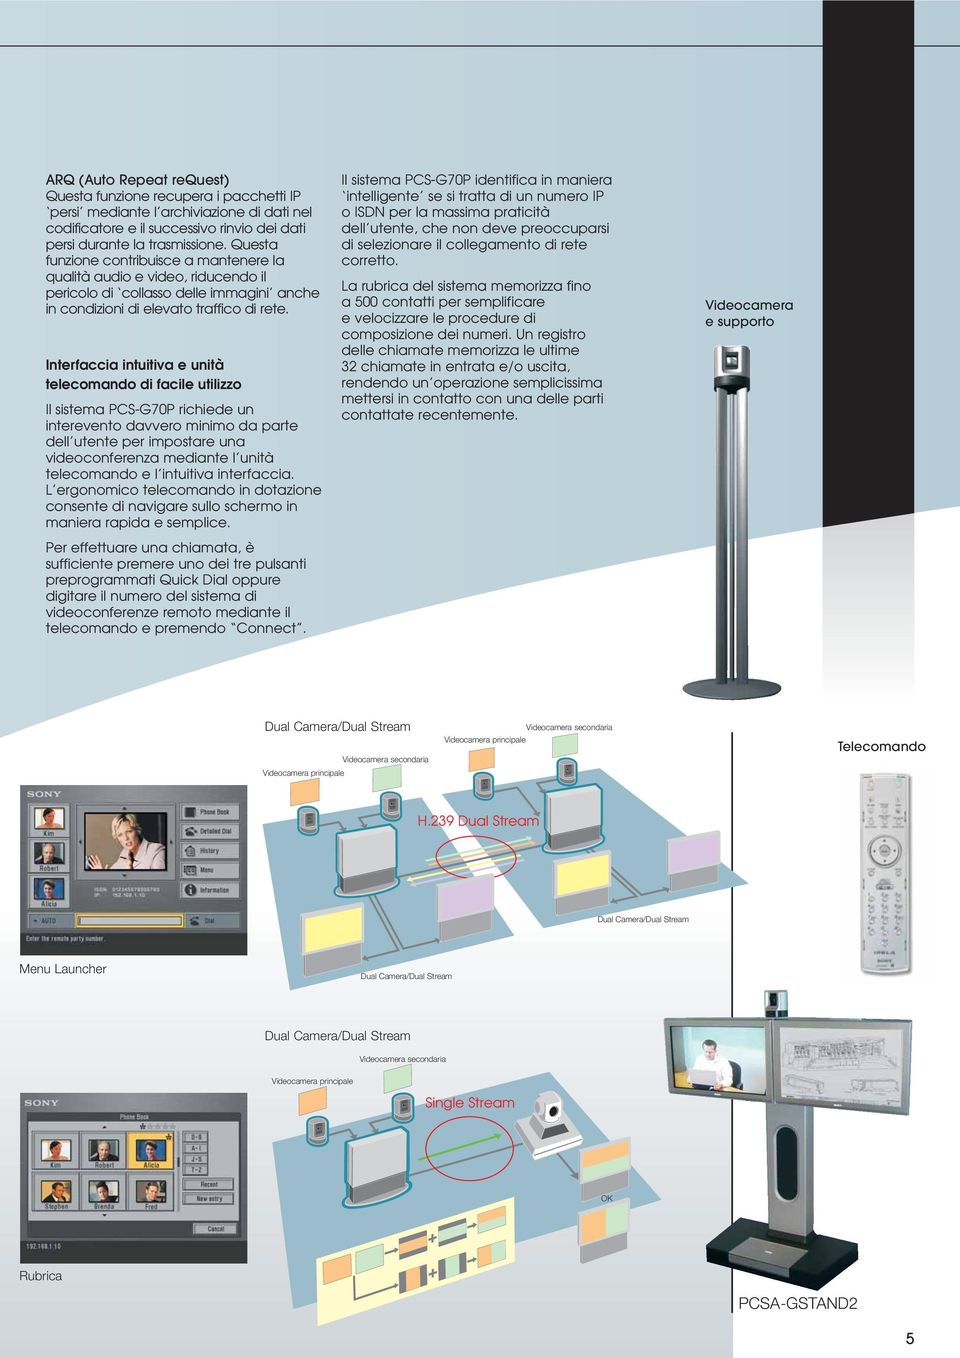 Interfaccia intuitiva e unità telecomando di facile utilizzo Il sistema PCS-G70P richiede un interevento davvero minimo da parte dell utente per impostare una videoconferenza mediante l unità